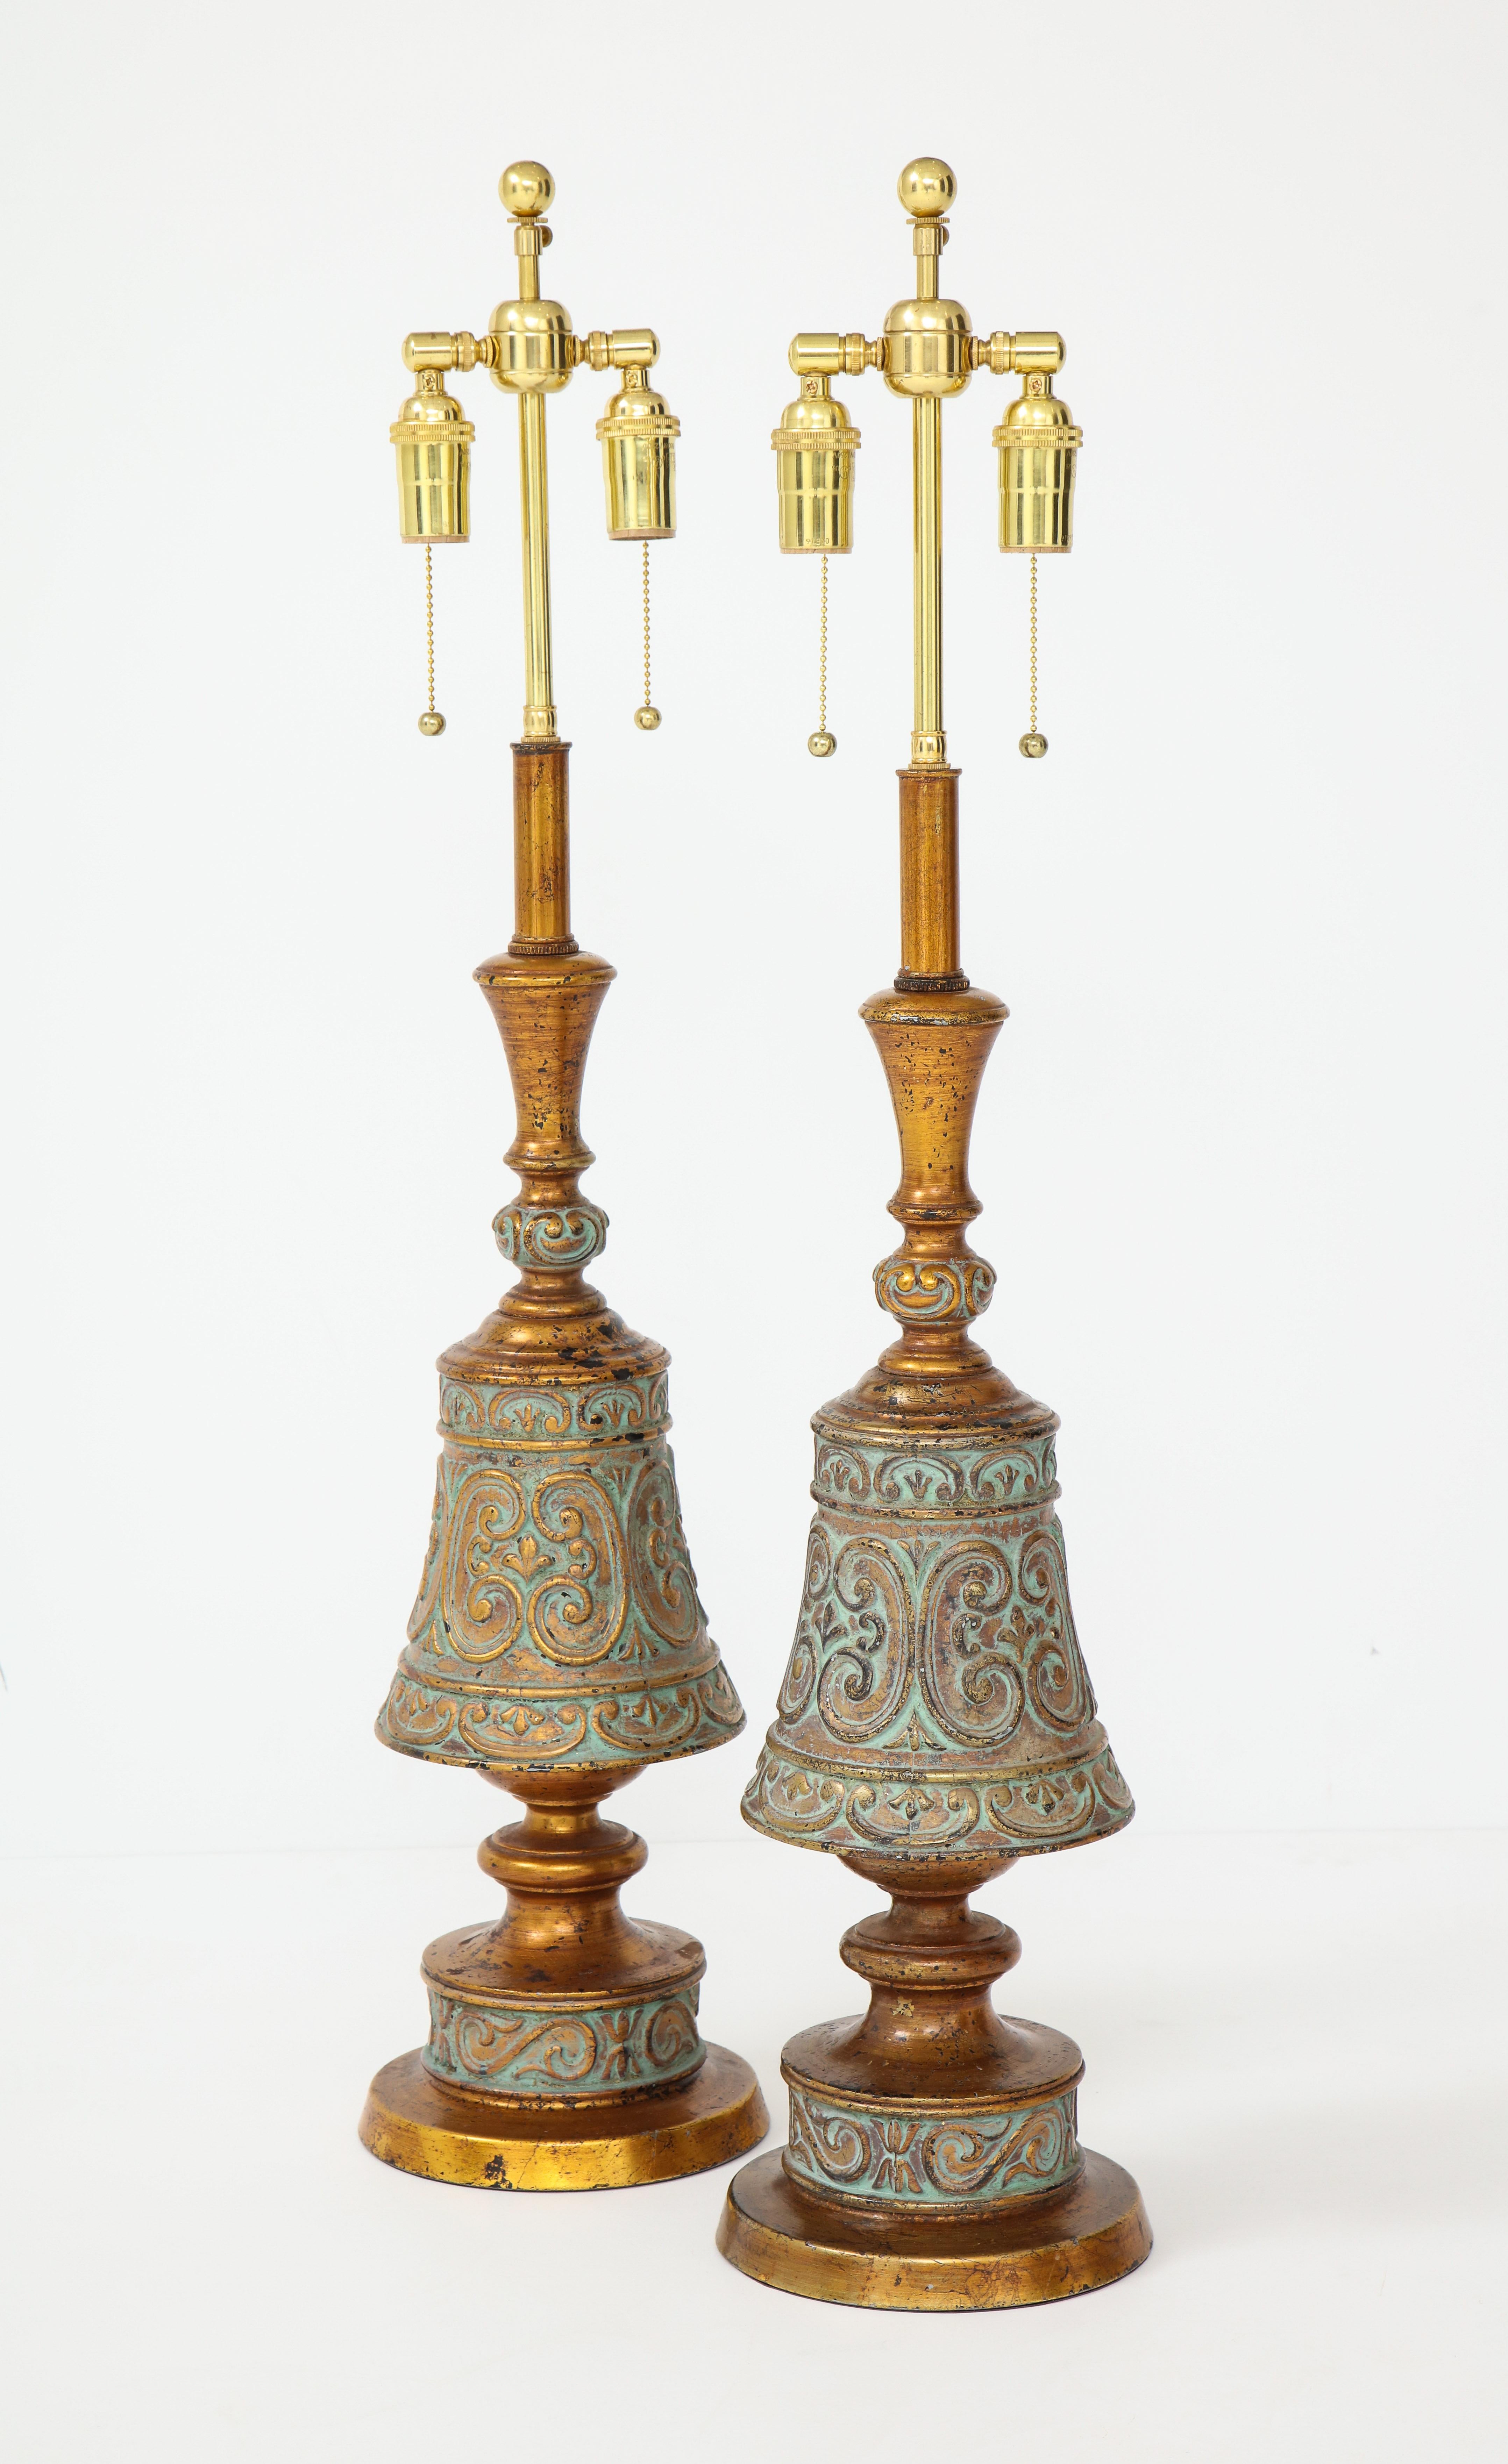 Zwei italienische Lampen im Hollywood-Regency-Stil aus den 1960er Jahren.
Die wunderschön verzierten gold- und blaugrünen Metallkörper der Lampe
wurden mit polierten Messing-Doppelclustern neu verkabelt.